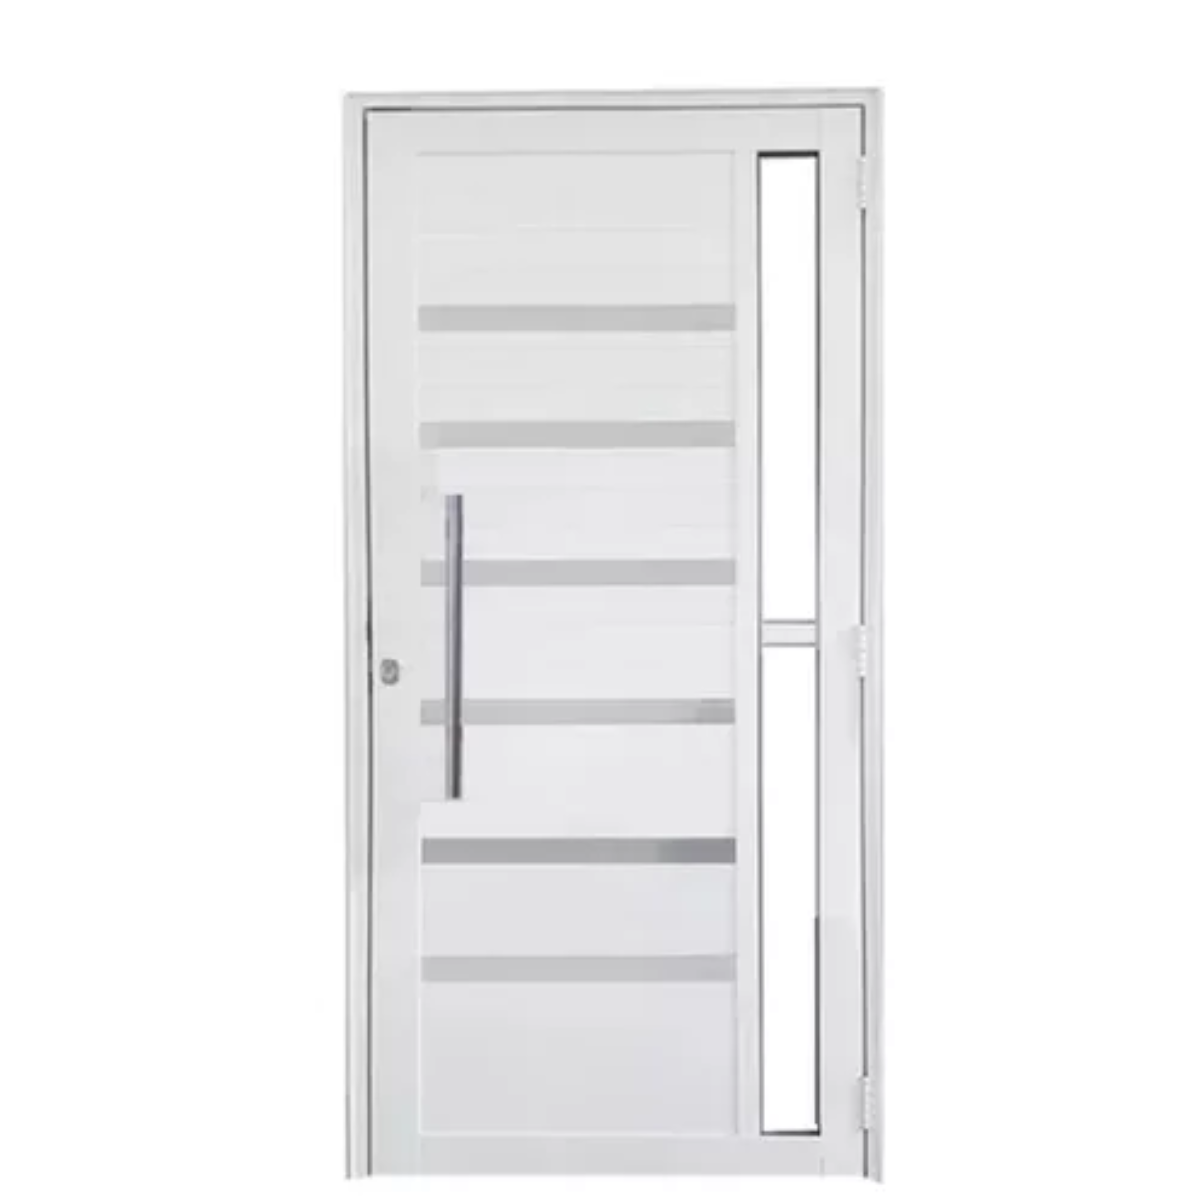 Porta de Aluminio Branco 210x90lambril C/vidro Direita